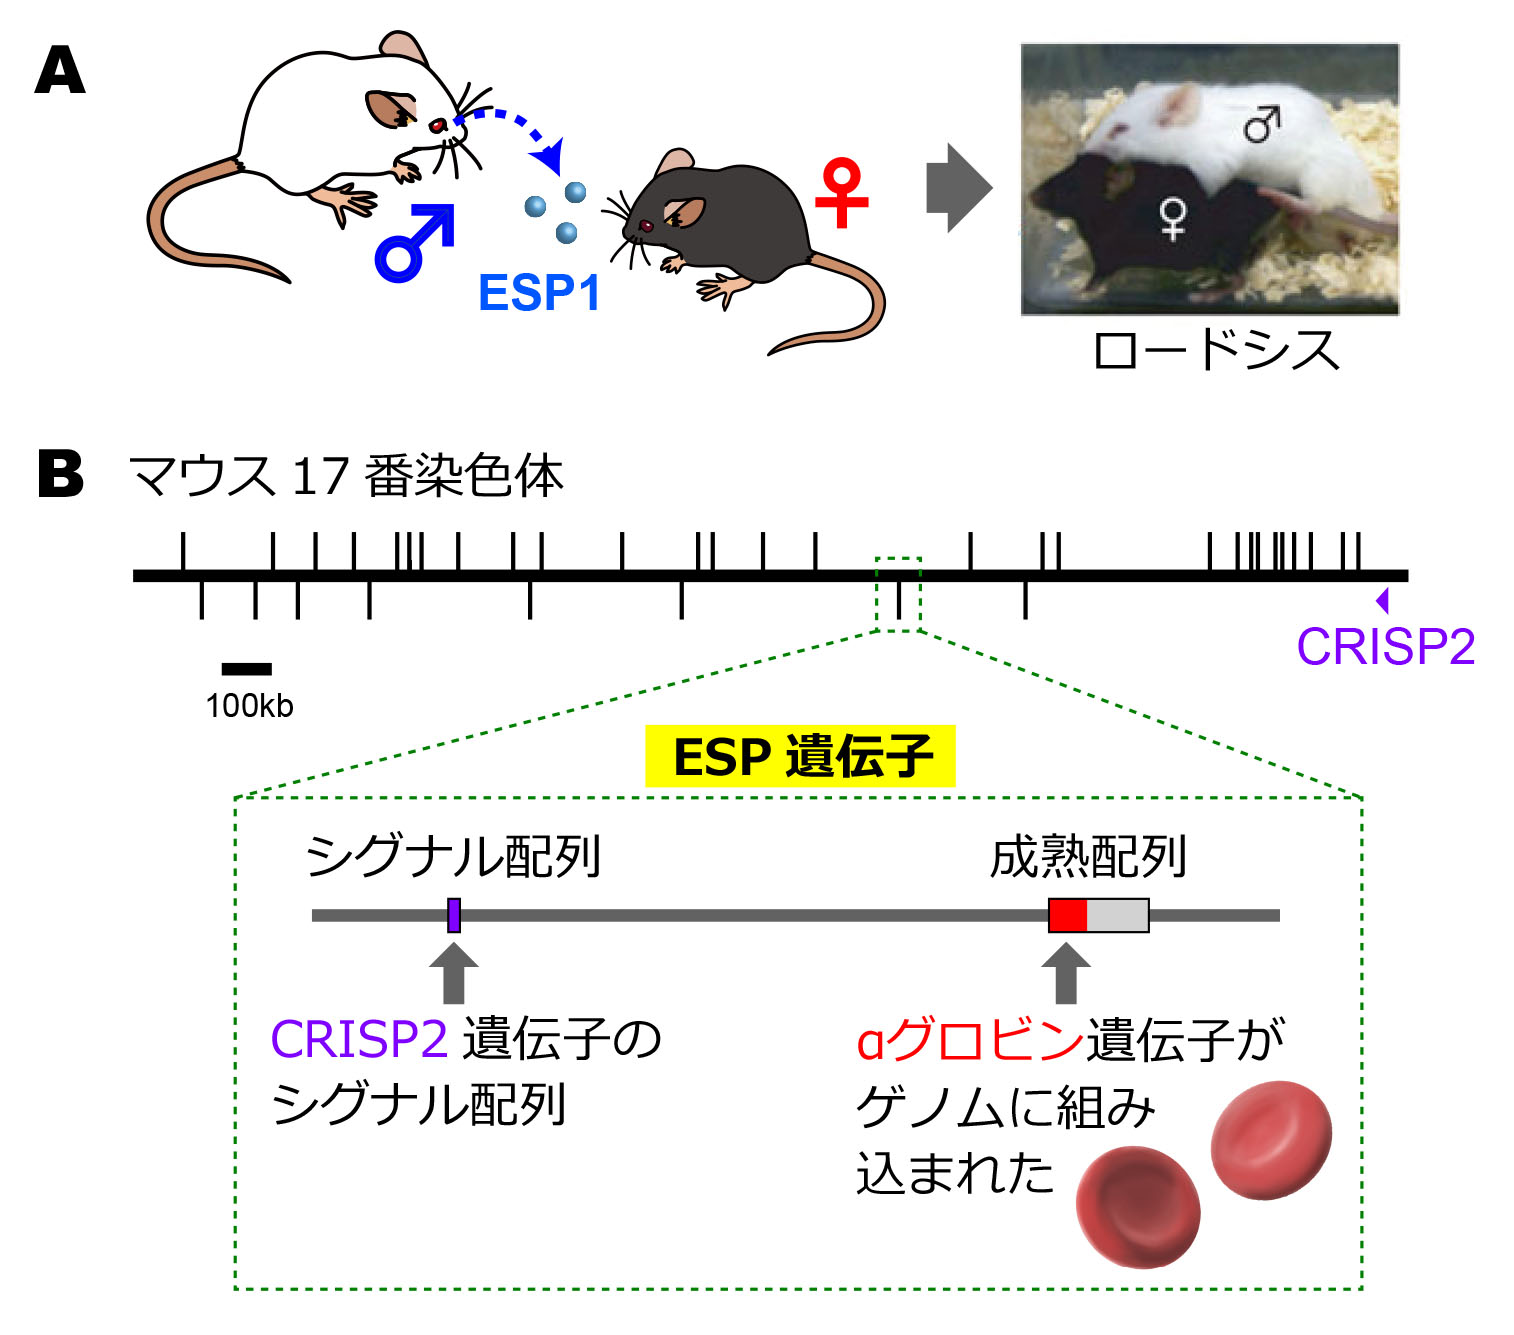 マウスの涙に含まれるフェロモンの遺伝子は 血液中のグロビンに由来する 東京大学大学院農学生命科学研究科 農学部